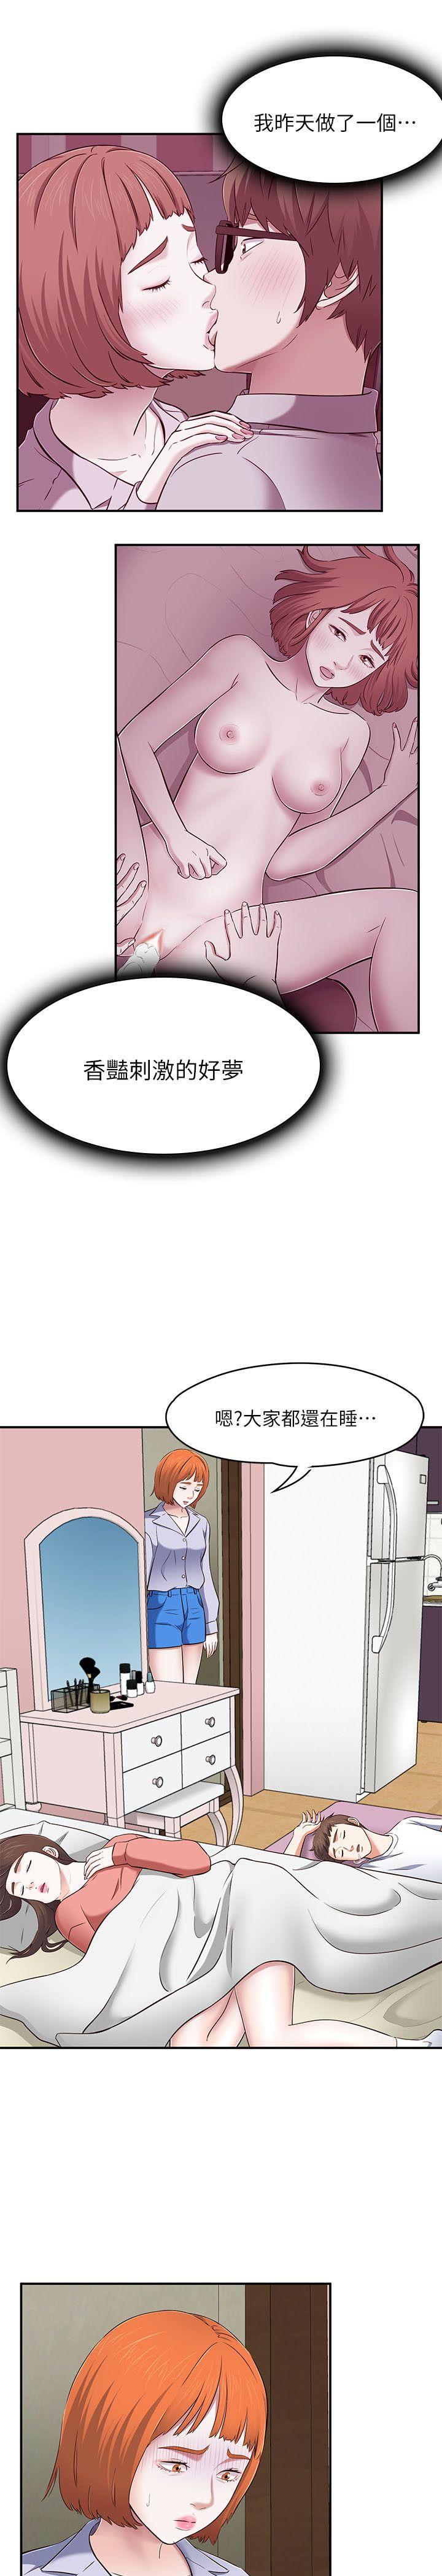 韩国污漫画 Roommate 第67话-新生吹喇叭 20